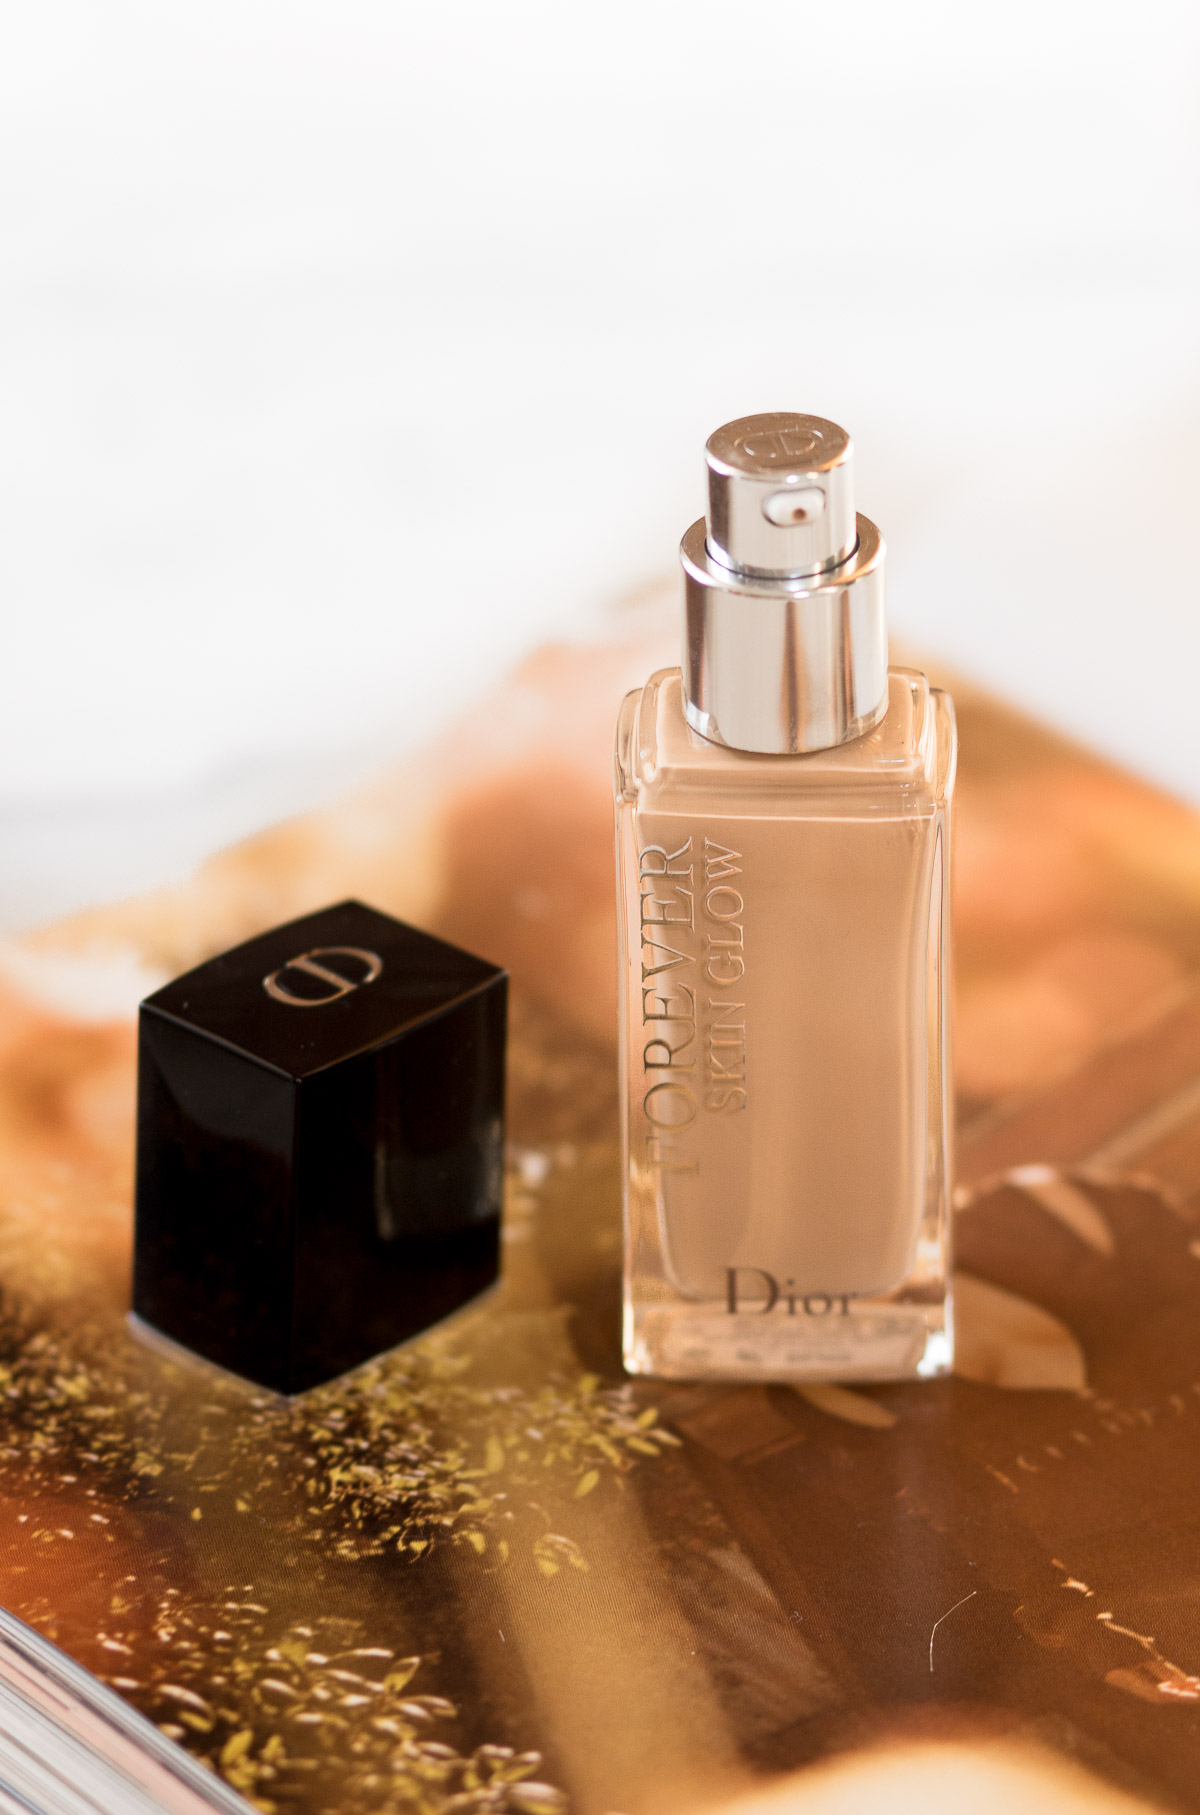 à¸�à¸¥à¸�à¸²à¸£à¸�à¹�à¸�à¸«à¸²à¸£à¸¹à¸�à¸�à¸²à¸�à¸ªà¸³à¸«à¸£à¸±à¸� Dior Diorskin Forever Foundation Skin Glow